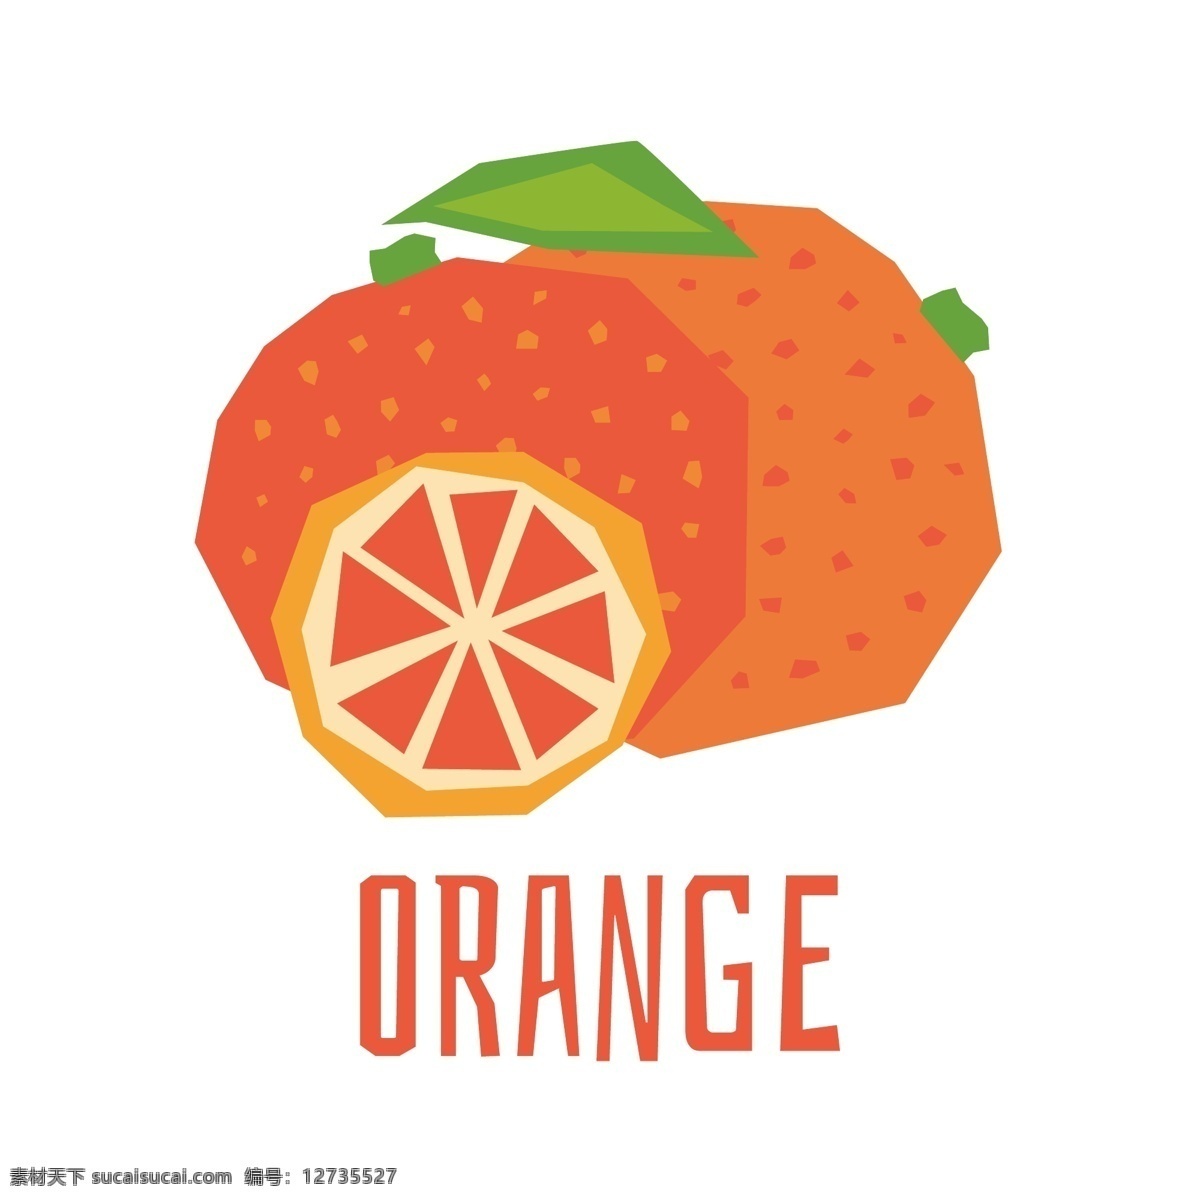 矢量卡通橙子 橙子 卡通橙子 卡通水果 手绘水果 矢量水果 矢量卡通水果 矢量手绘水果 卡通水果素材